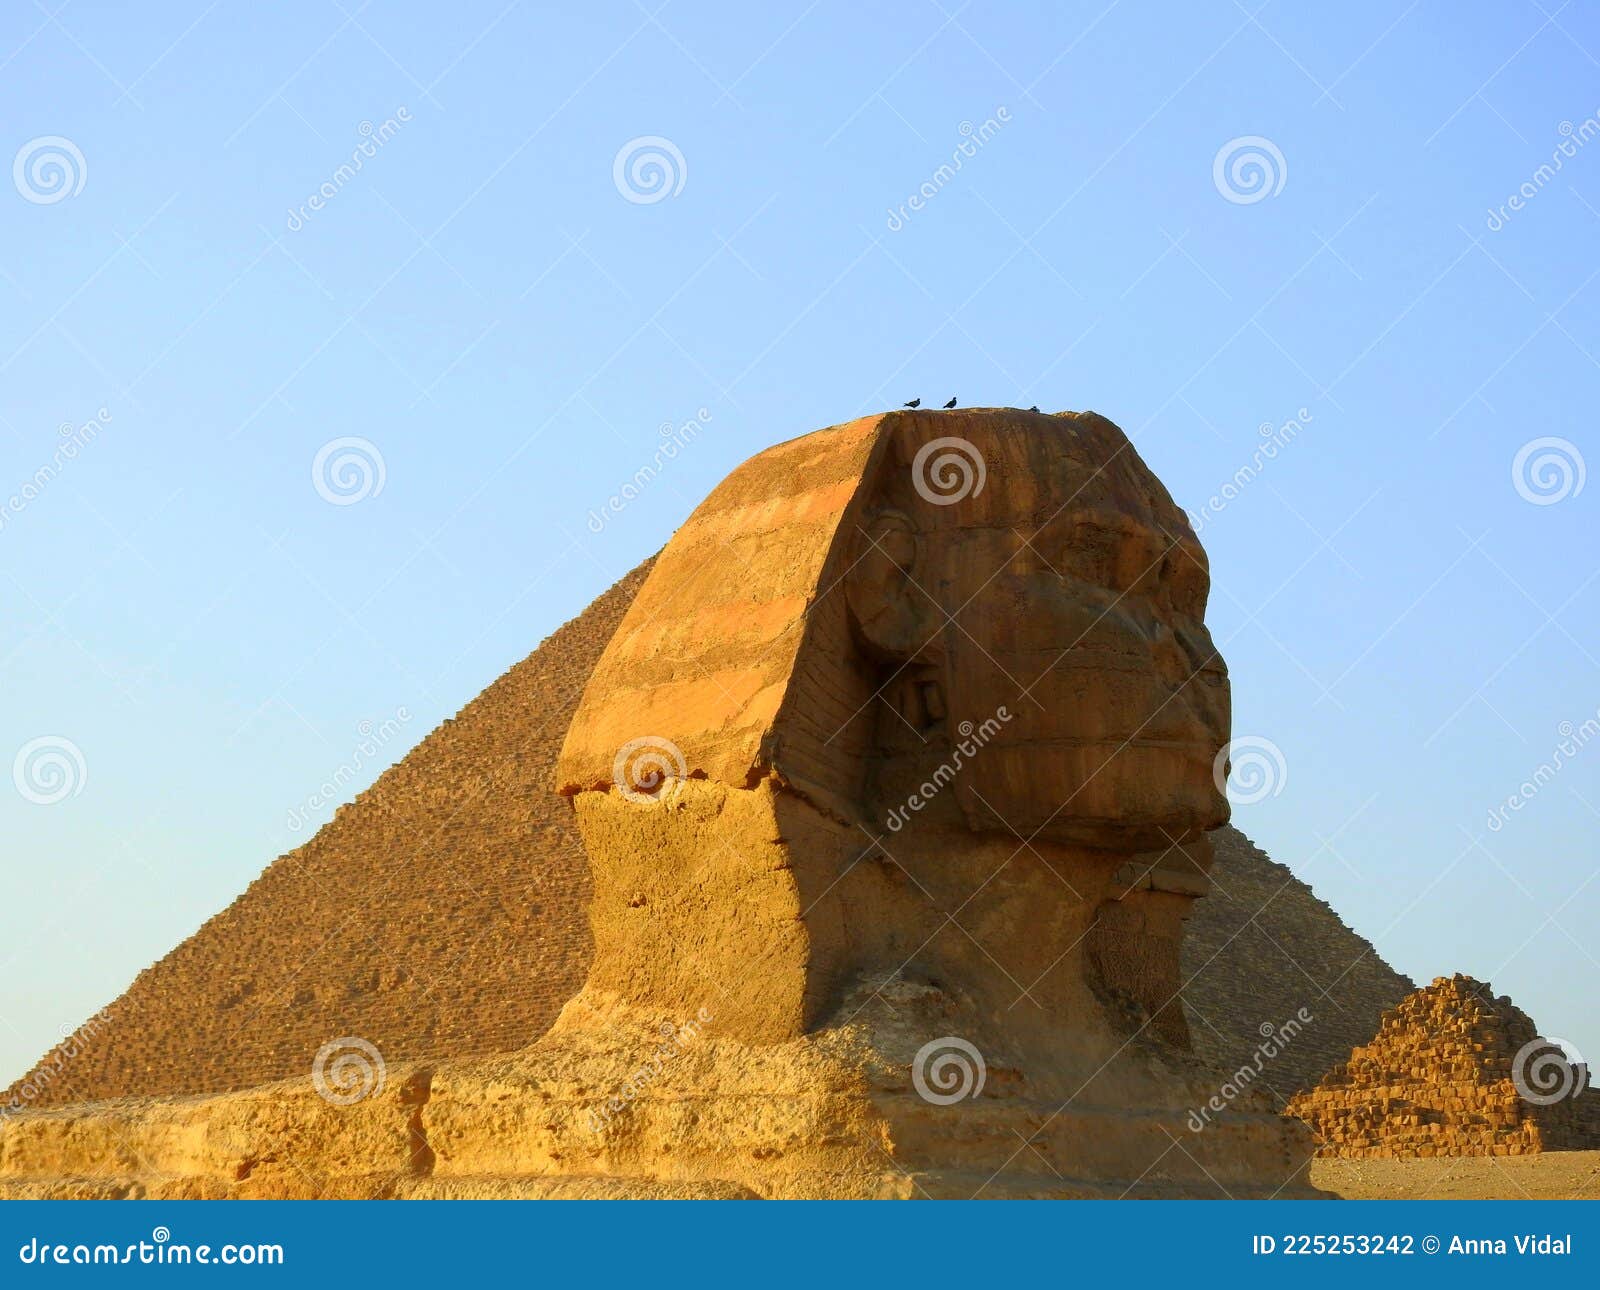 esfinge de guiza. el cairo. egipto.